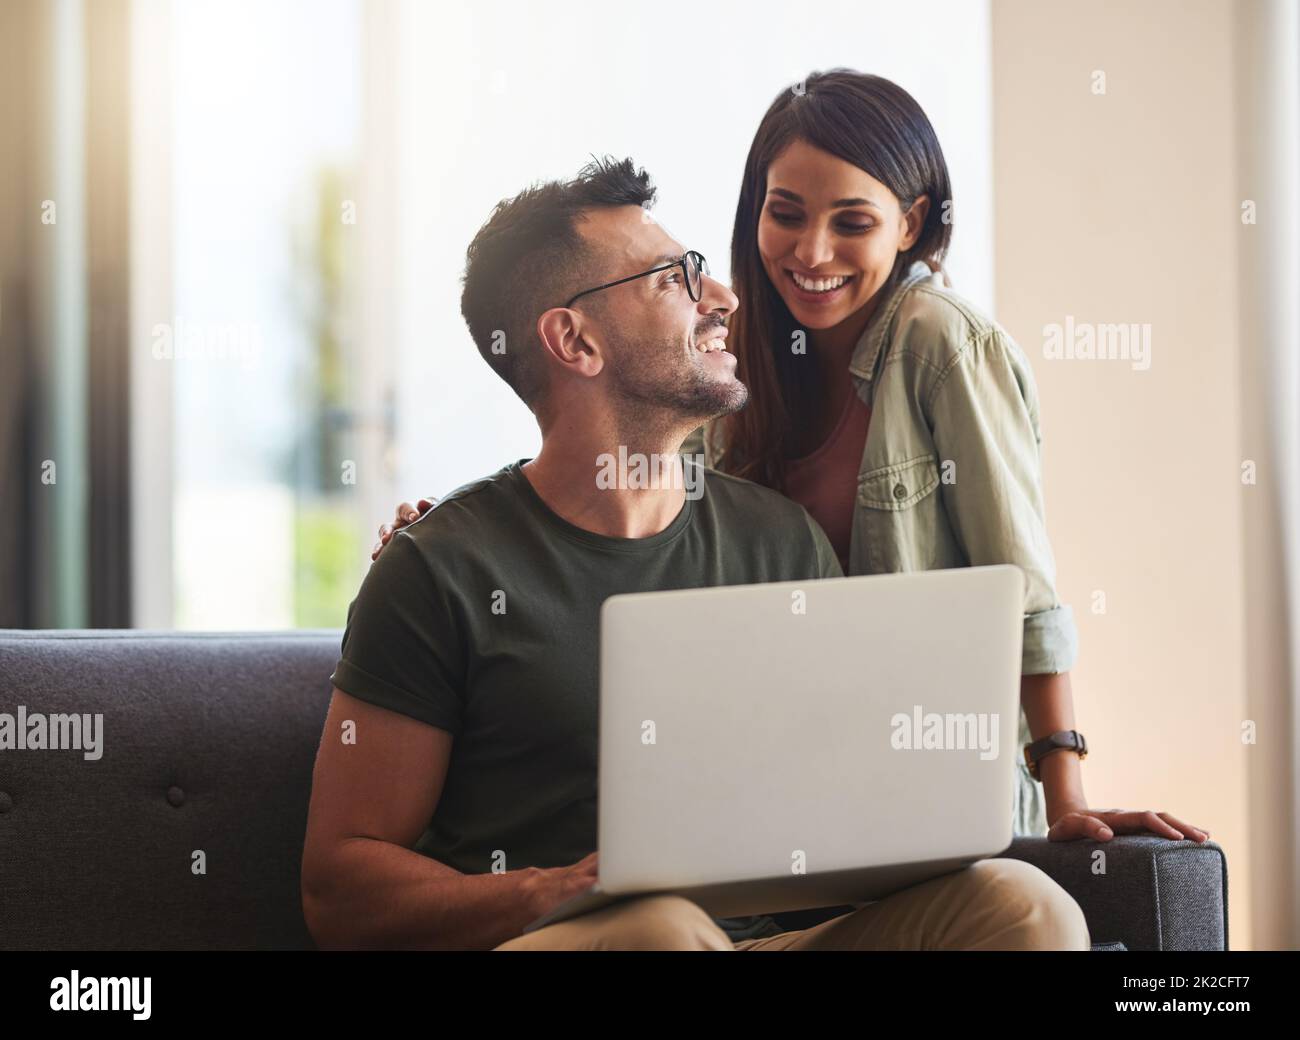 Réservez en ligne pour les vacances que nous avons toujours voulu. Photo d'un jeune couple utilisant un ordinateur portable à la maison. Banque D'Images